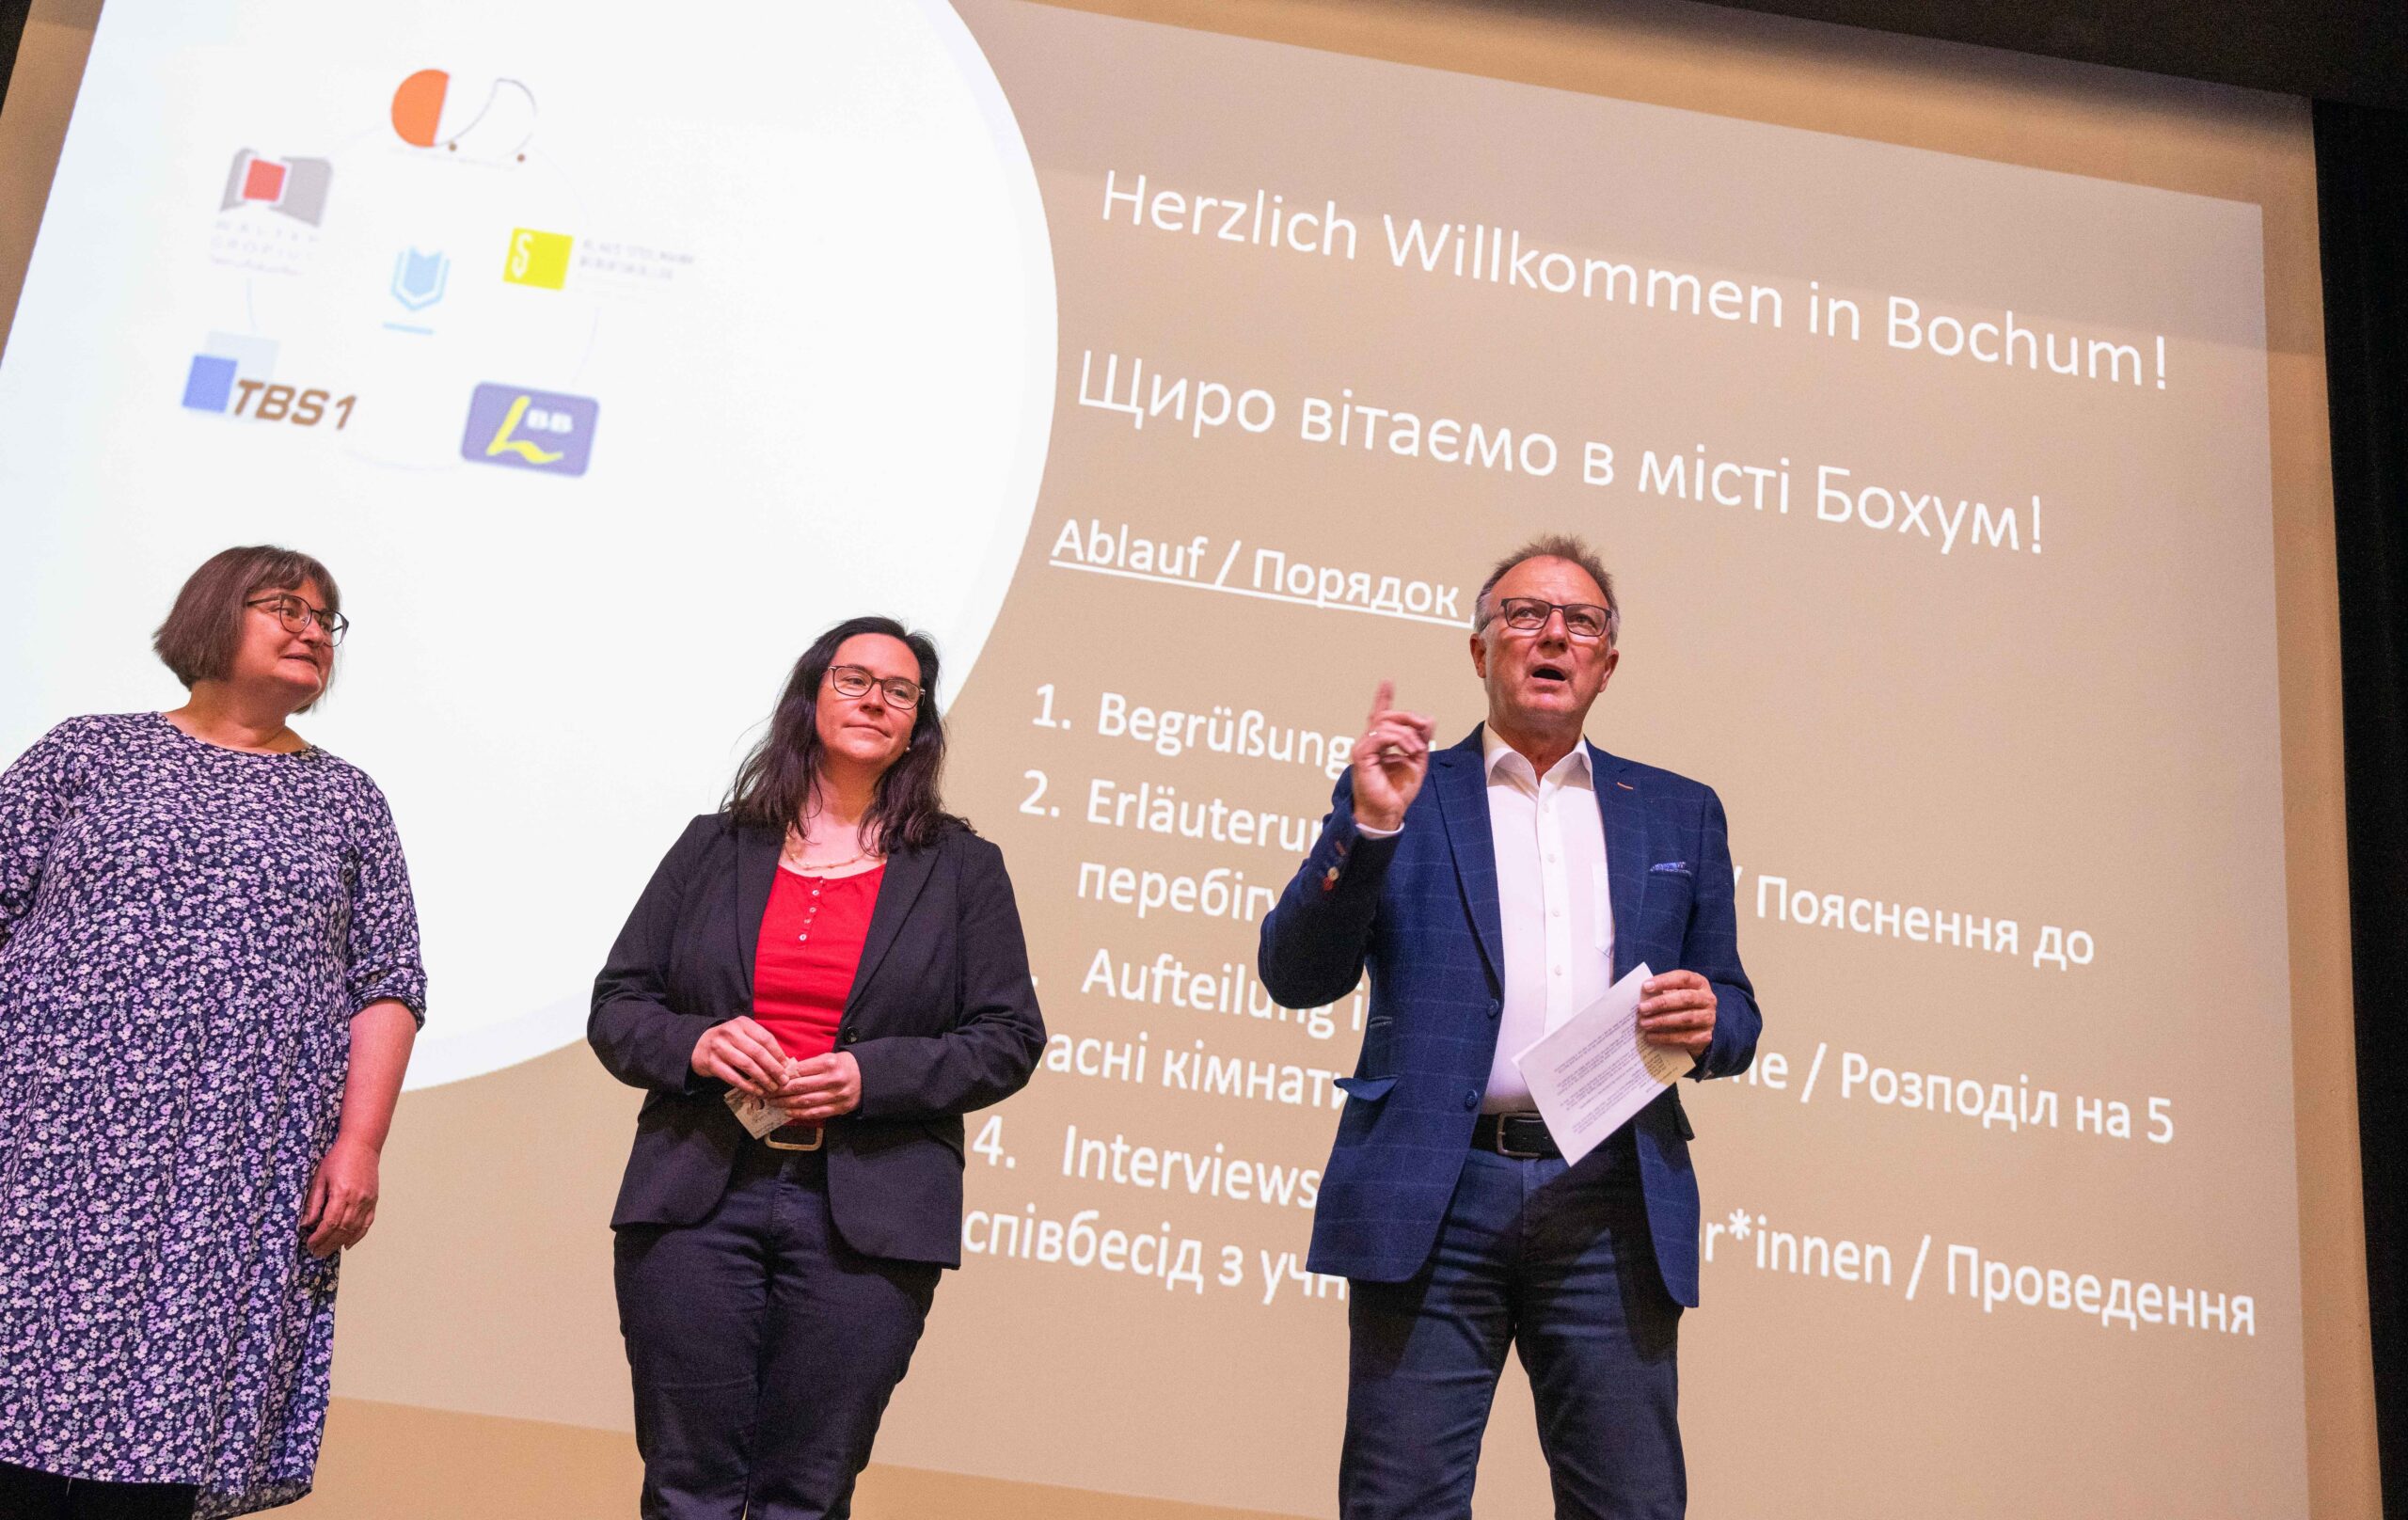 Berufskolleg-Verbund in Bochum begrüßt über 80 ukrainische Schülerinnen und Schüler